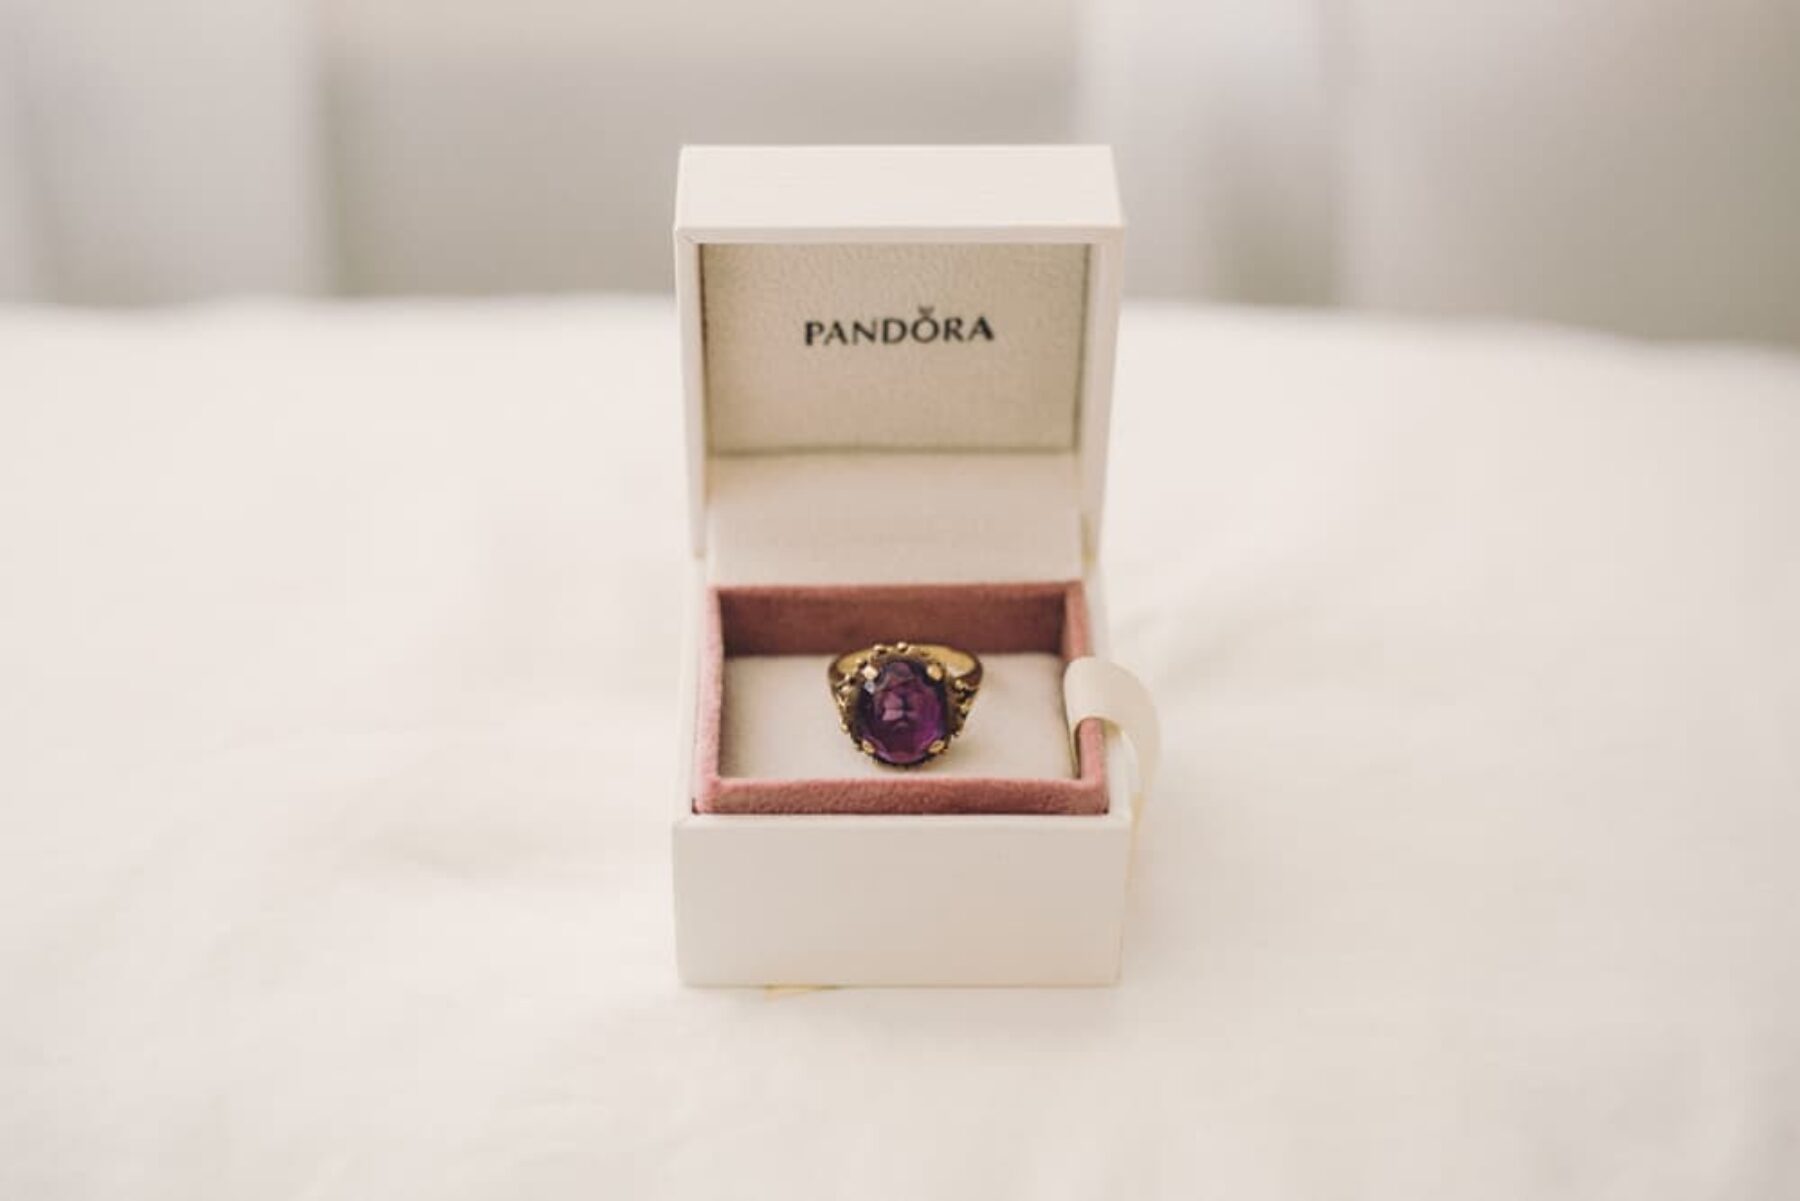 Pandora engagement ring